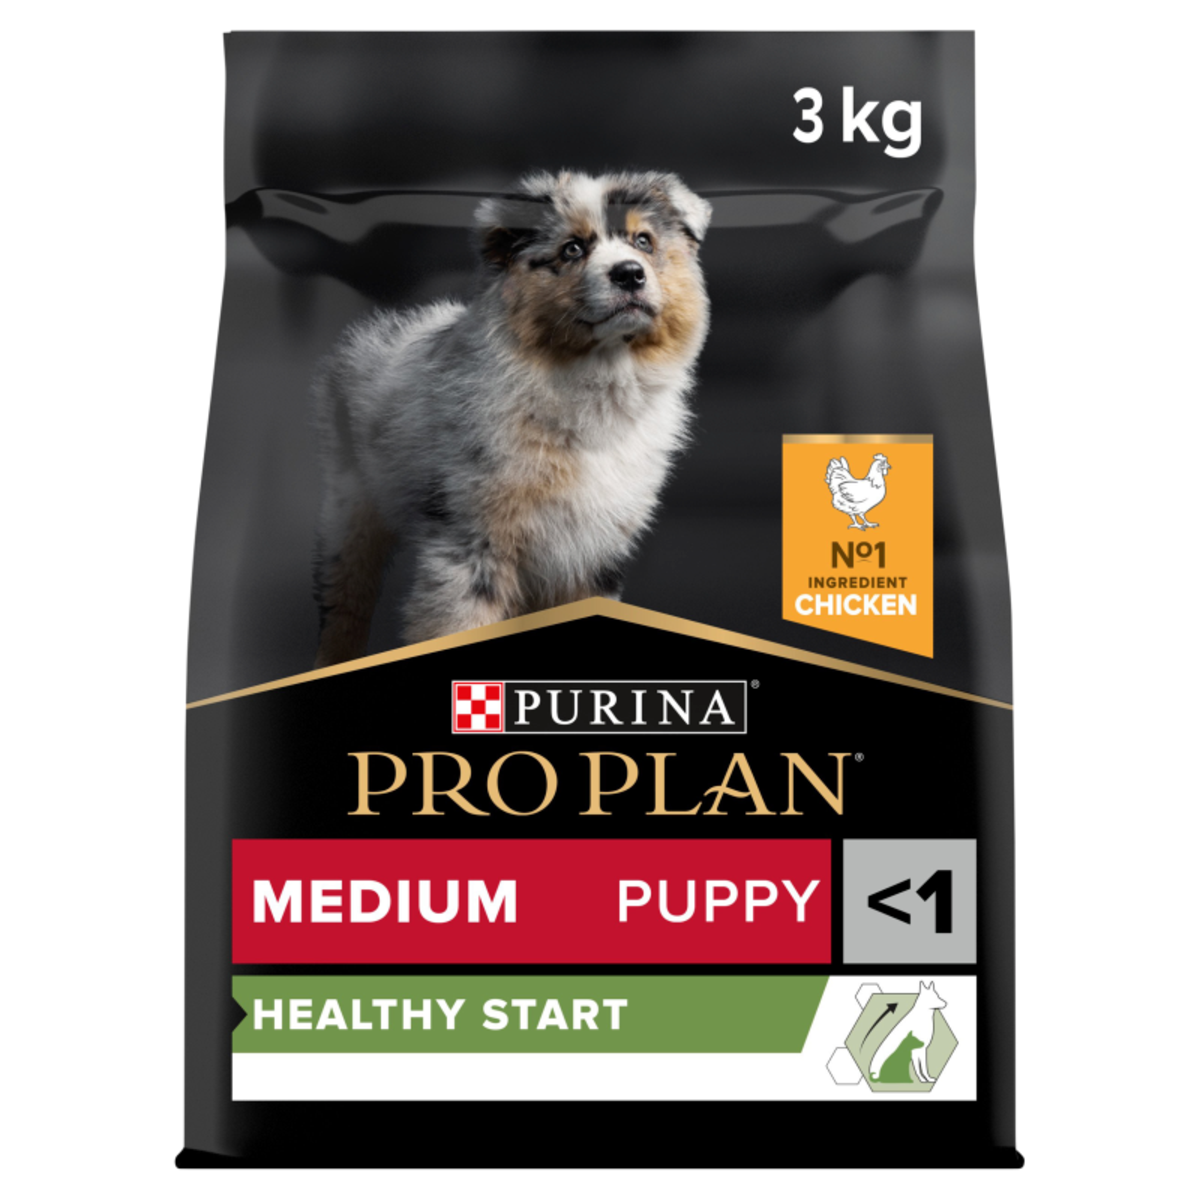 PRO PLAN Medium Puppy Healthy Start Chicken Dry Dog Food 3kg